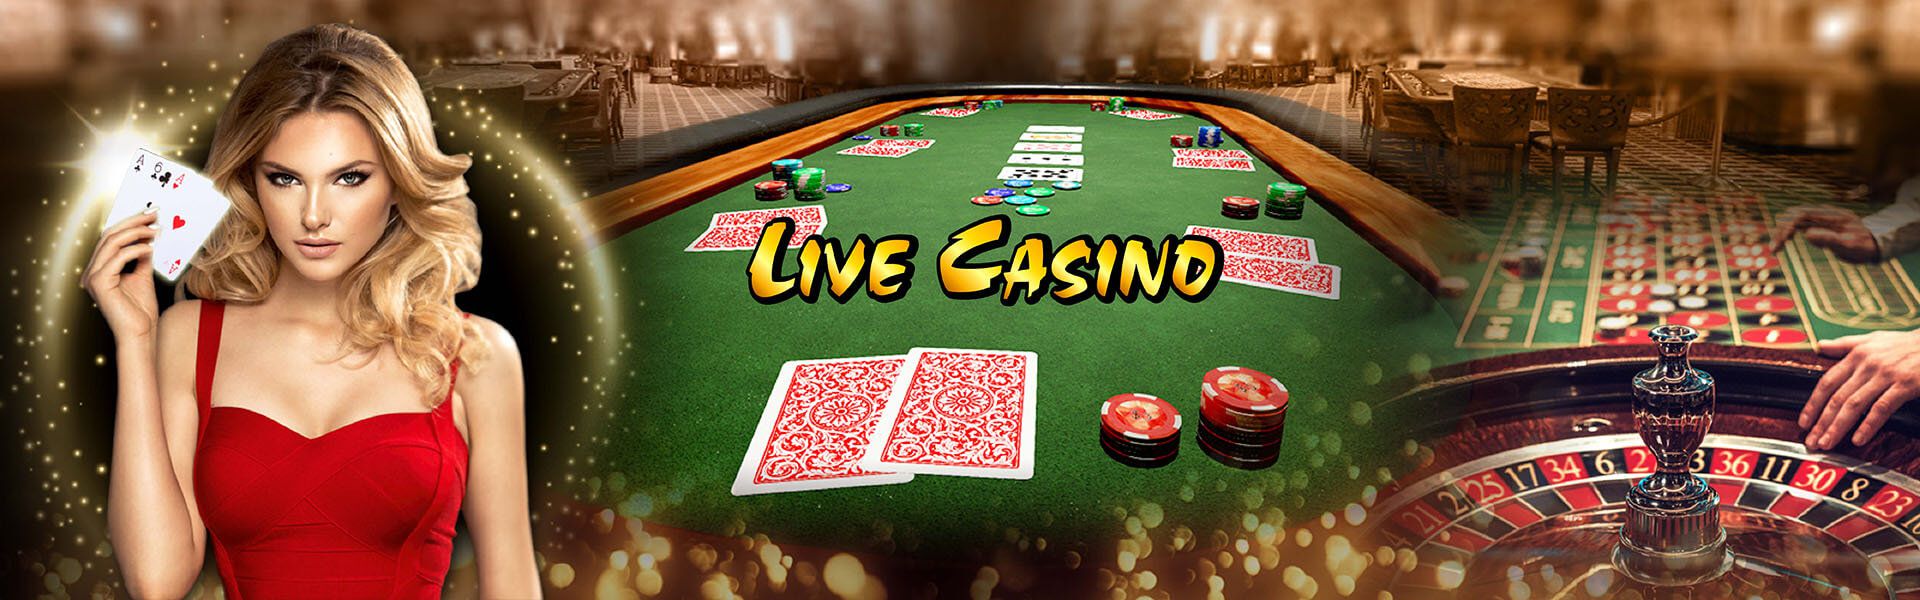 Live casino, casino trực tuyến, casino trực tuyến AE888, casino trực tuyến uy tín, sảnh live casino AE888